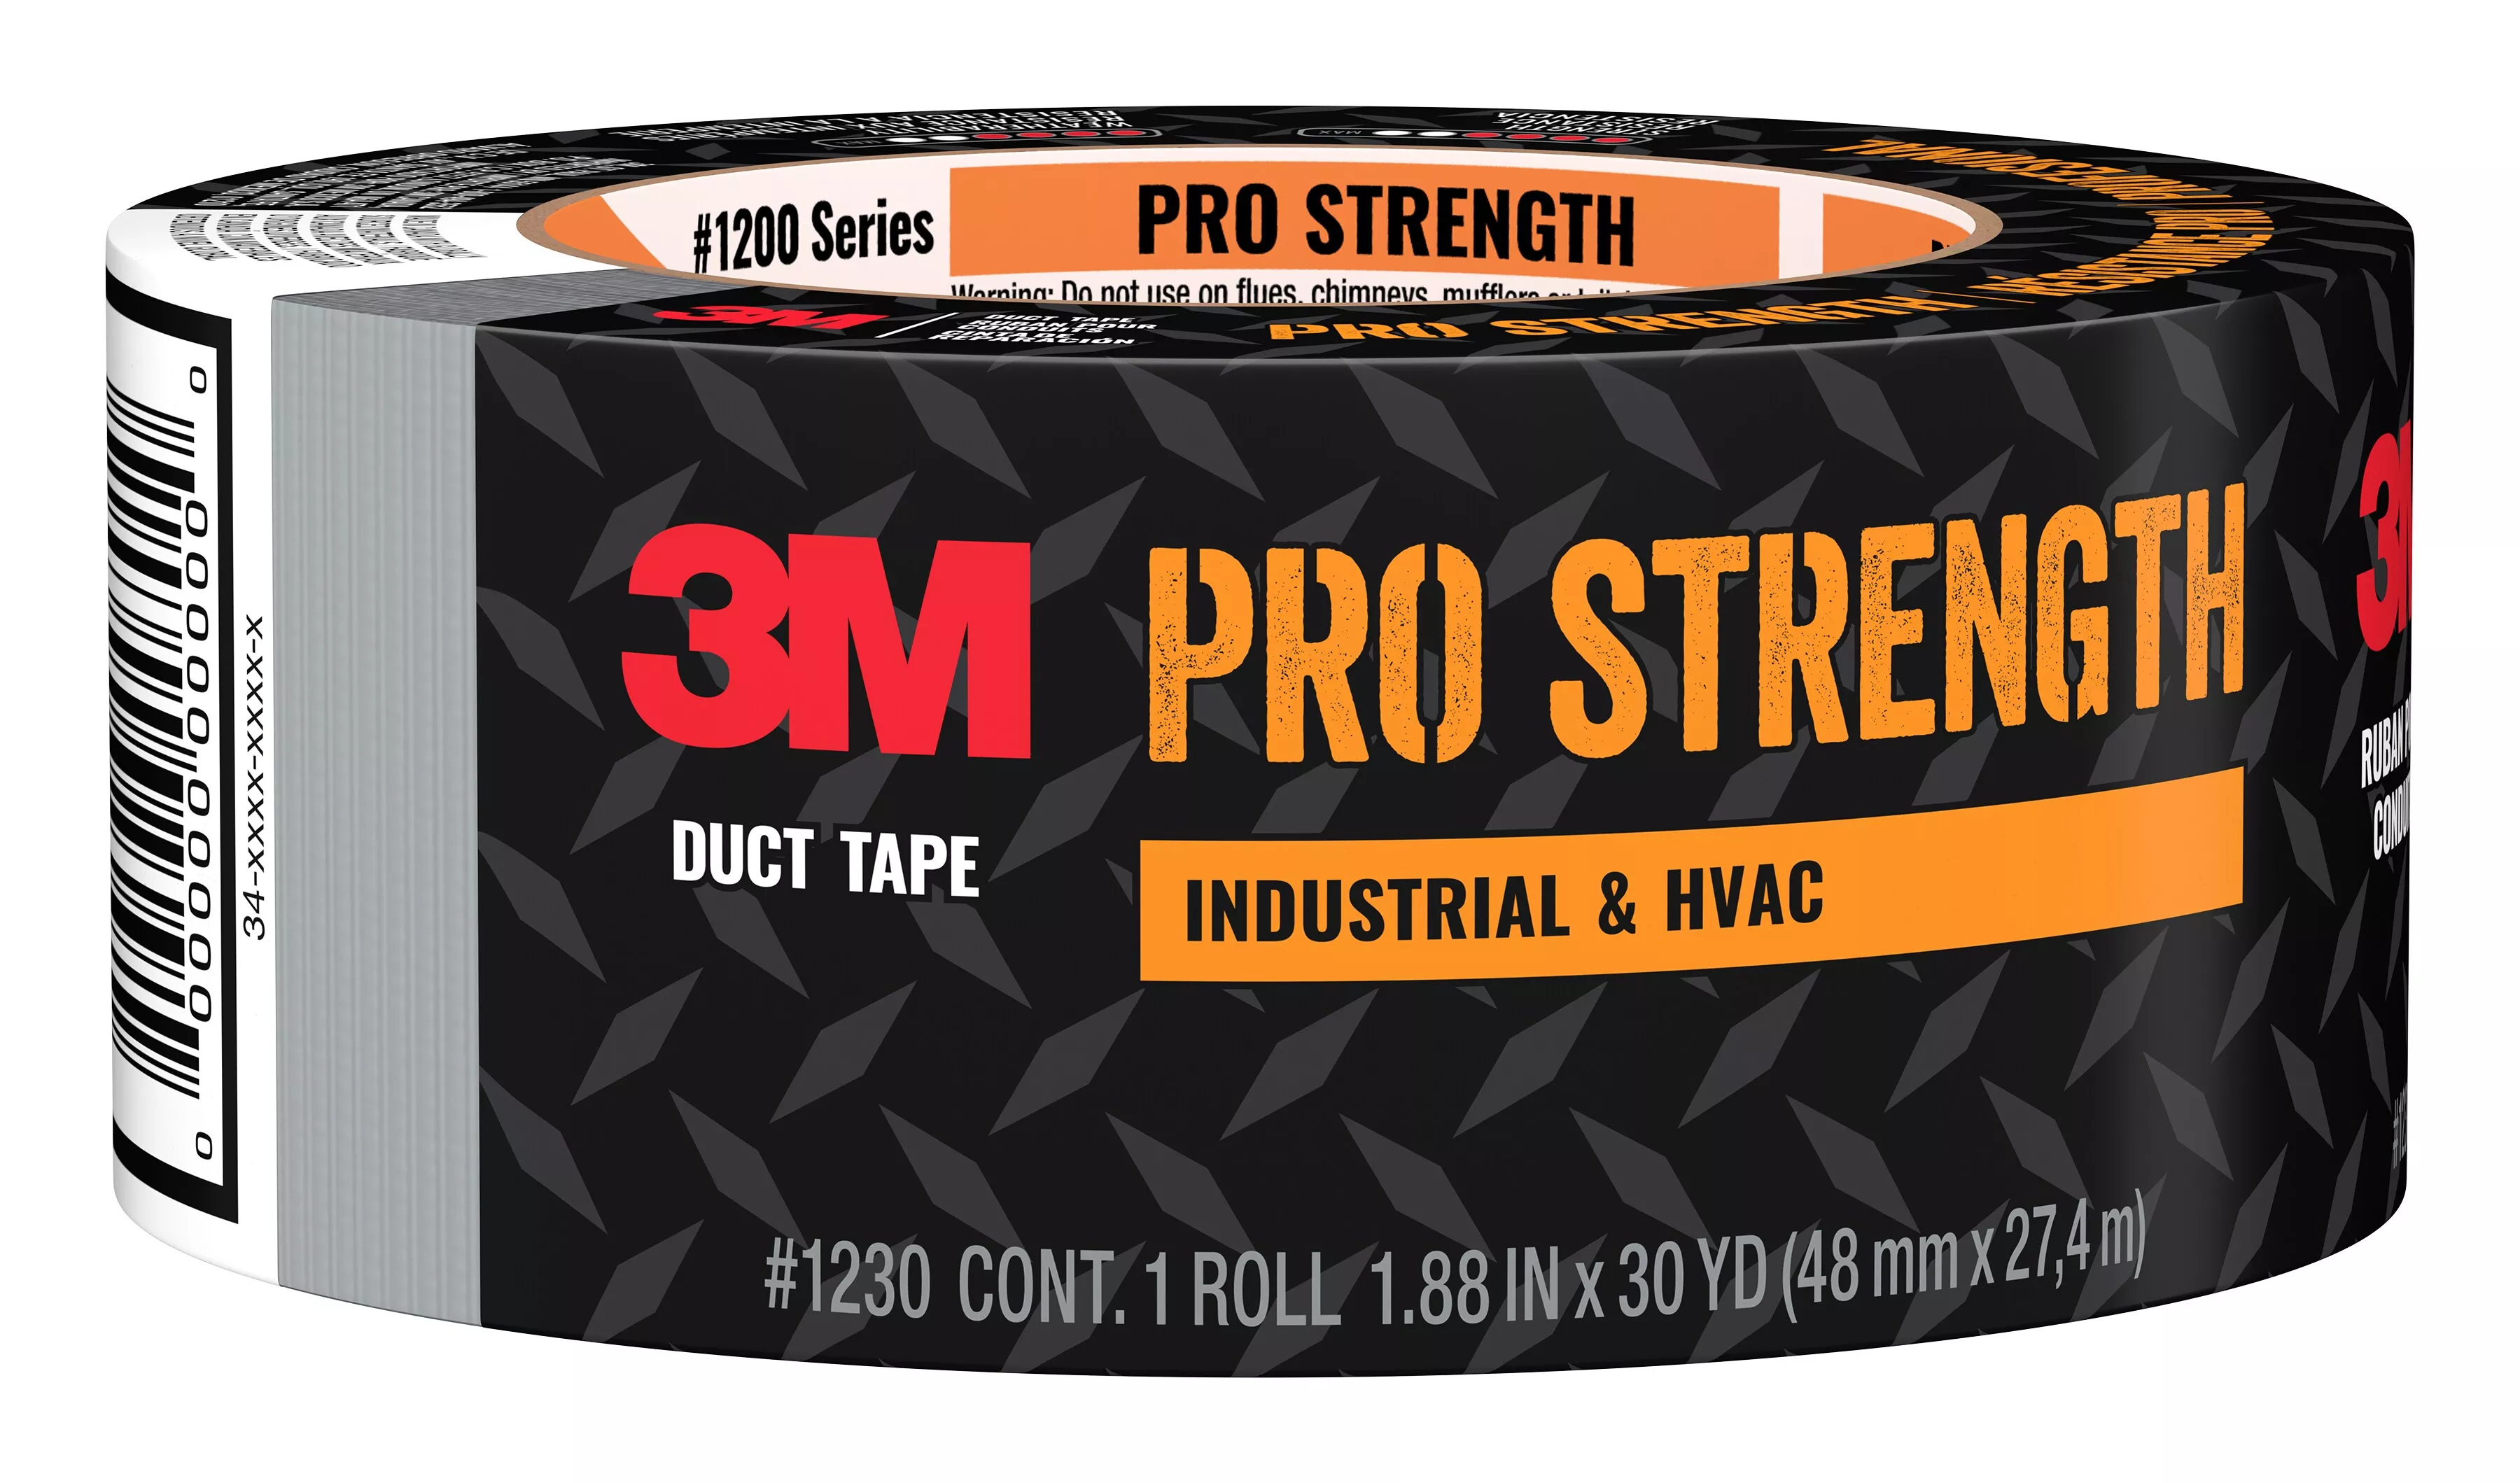 3M™ Pro Strength Duct Tape 1230-C 1.88 in x 30 yd (48 mm x 27.4 m) 9 rls/cs